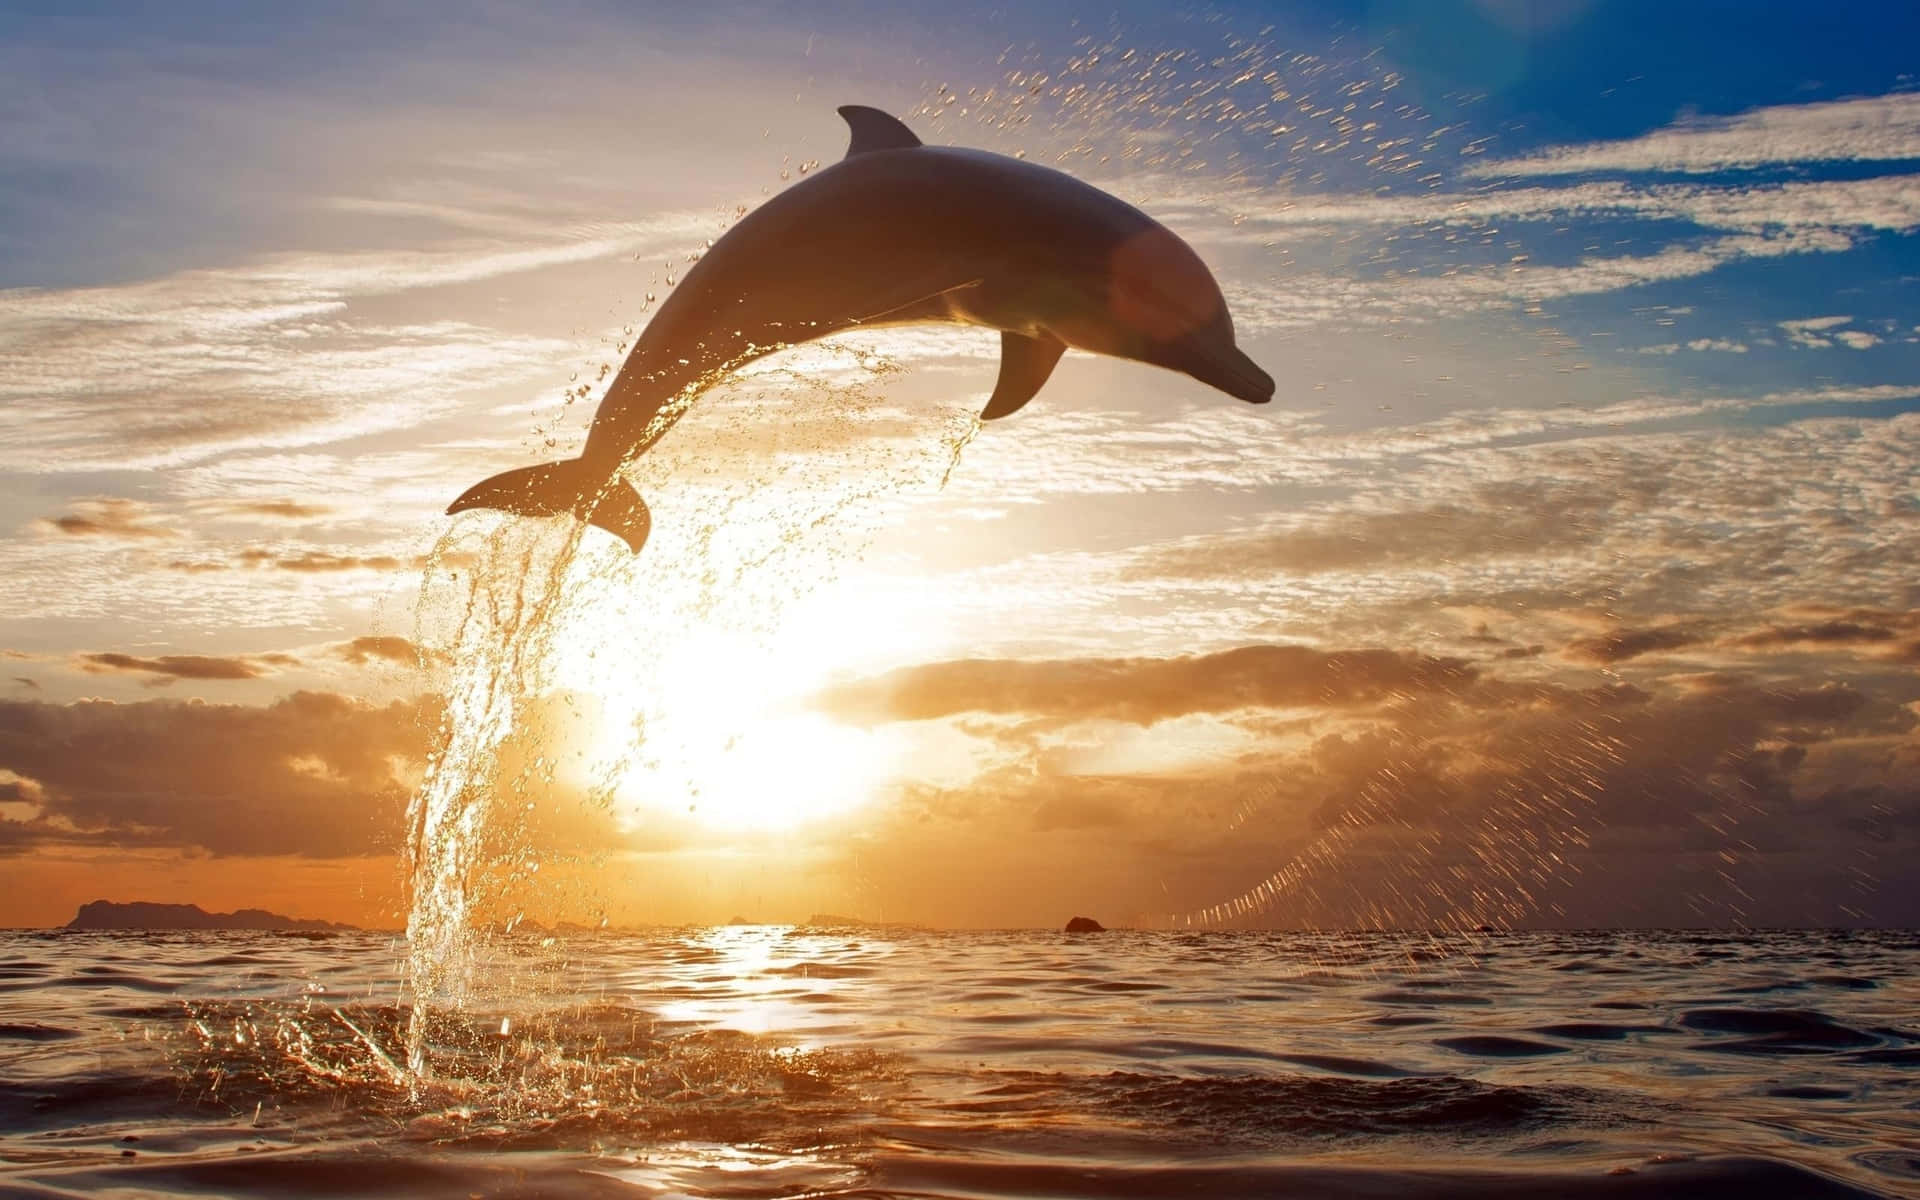 dolphin sunset desktop wallpaper